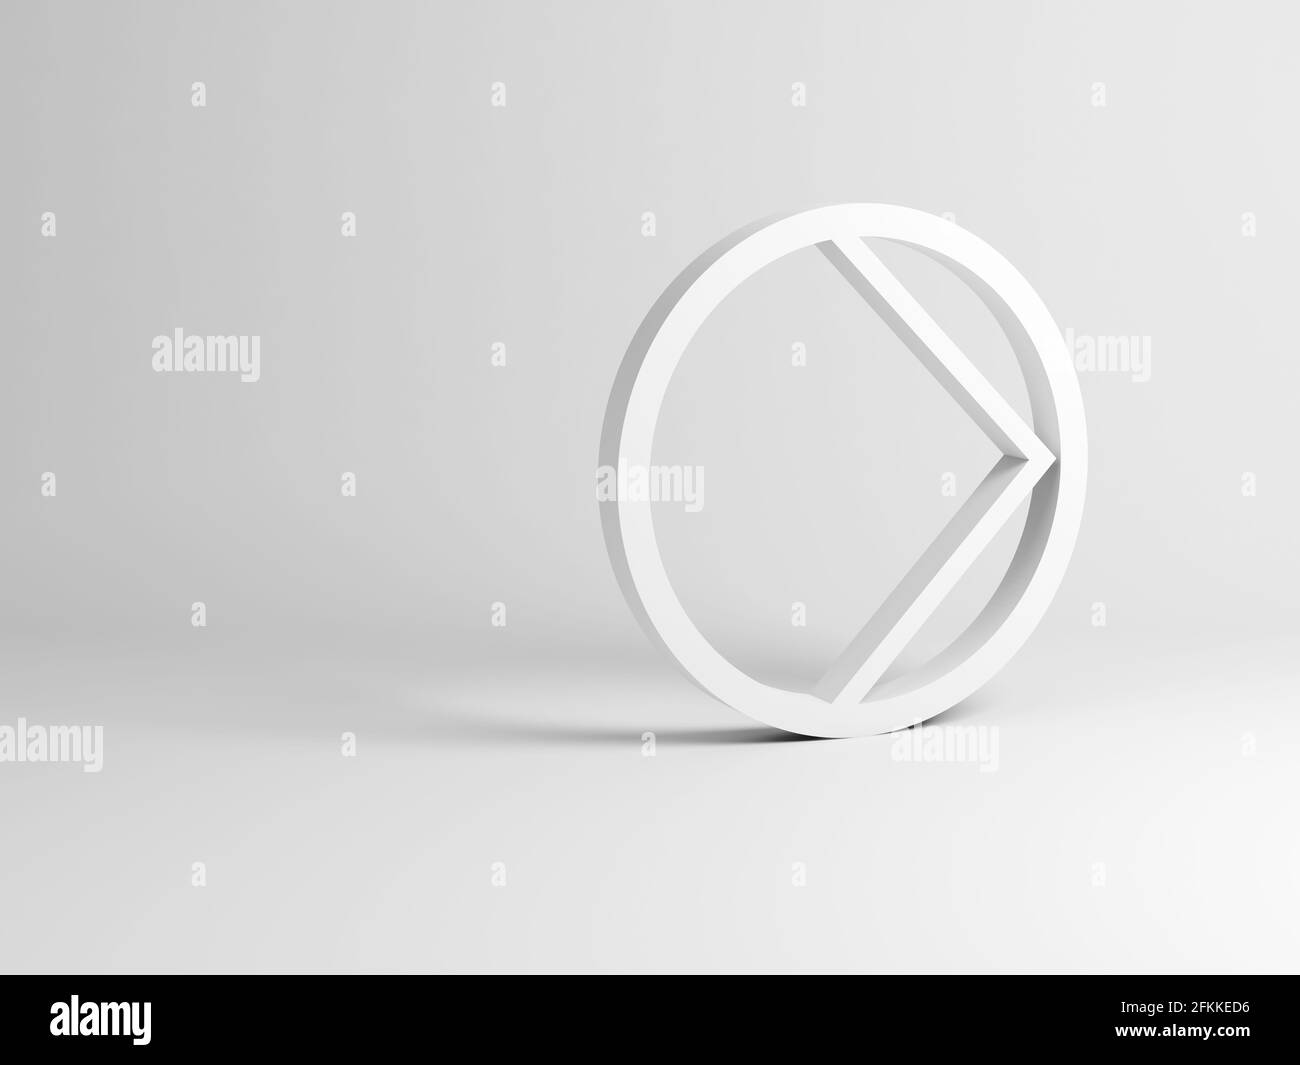 Le panneau d'angle dans un cercle se dresse dans un studio blanc vide. Installation abstraite de l'icône de lecture, illustration de rendu 3d Banque D'Images